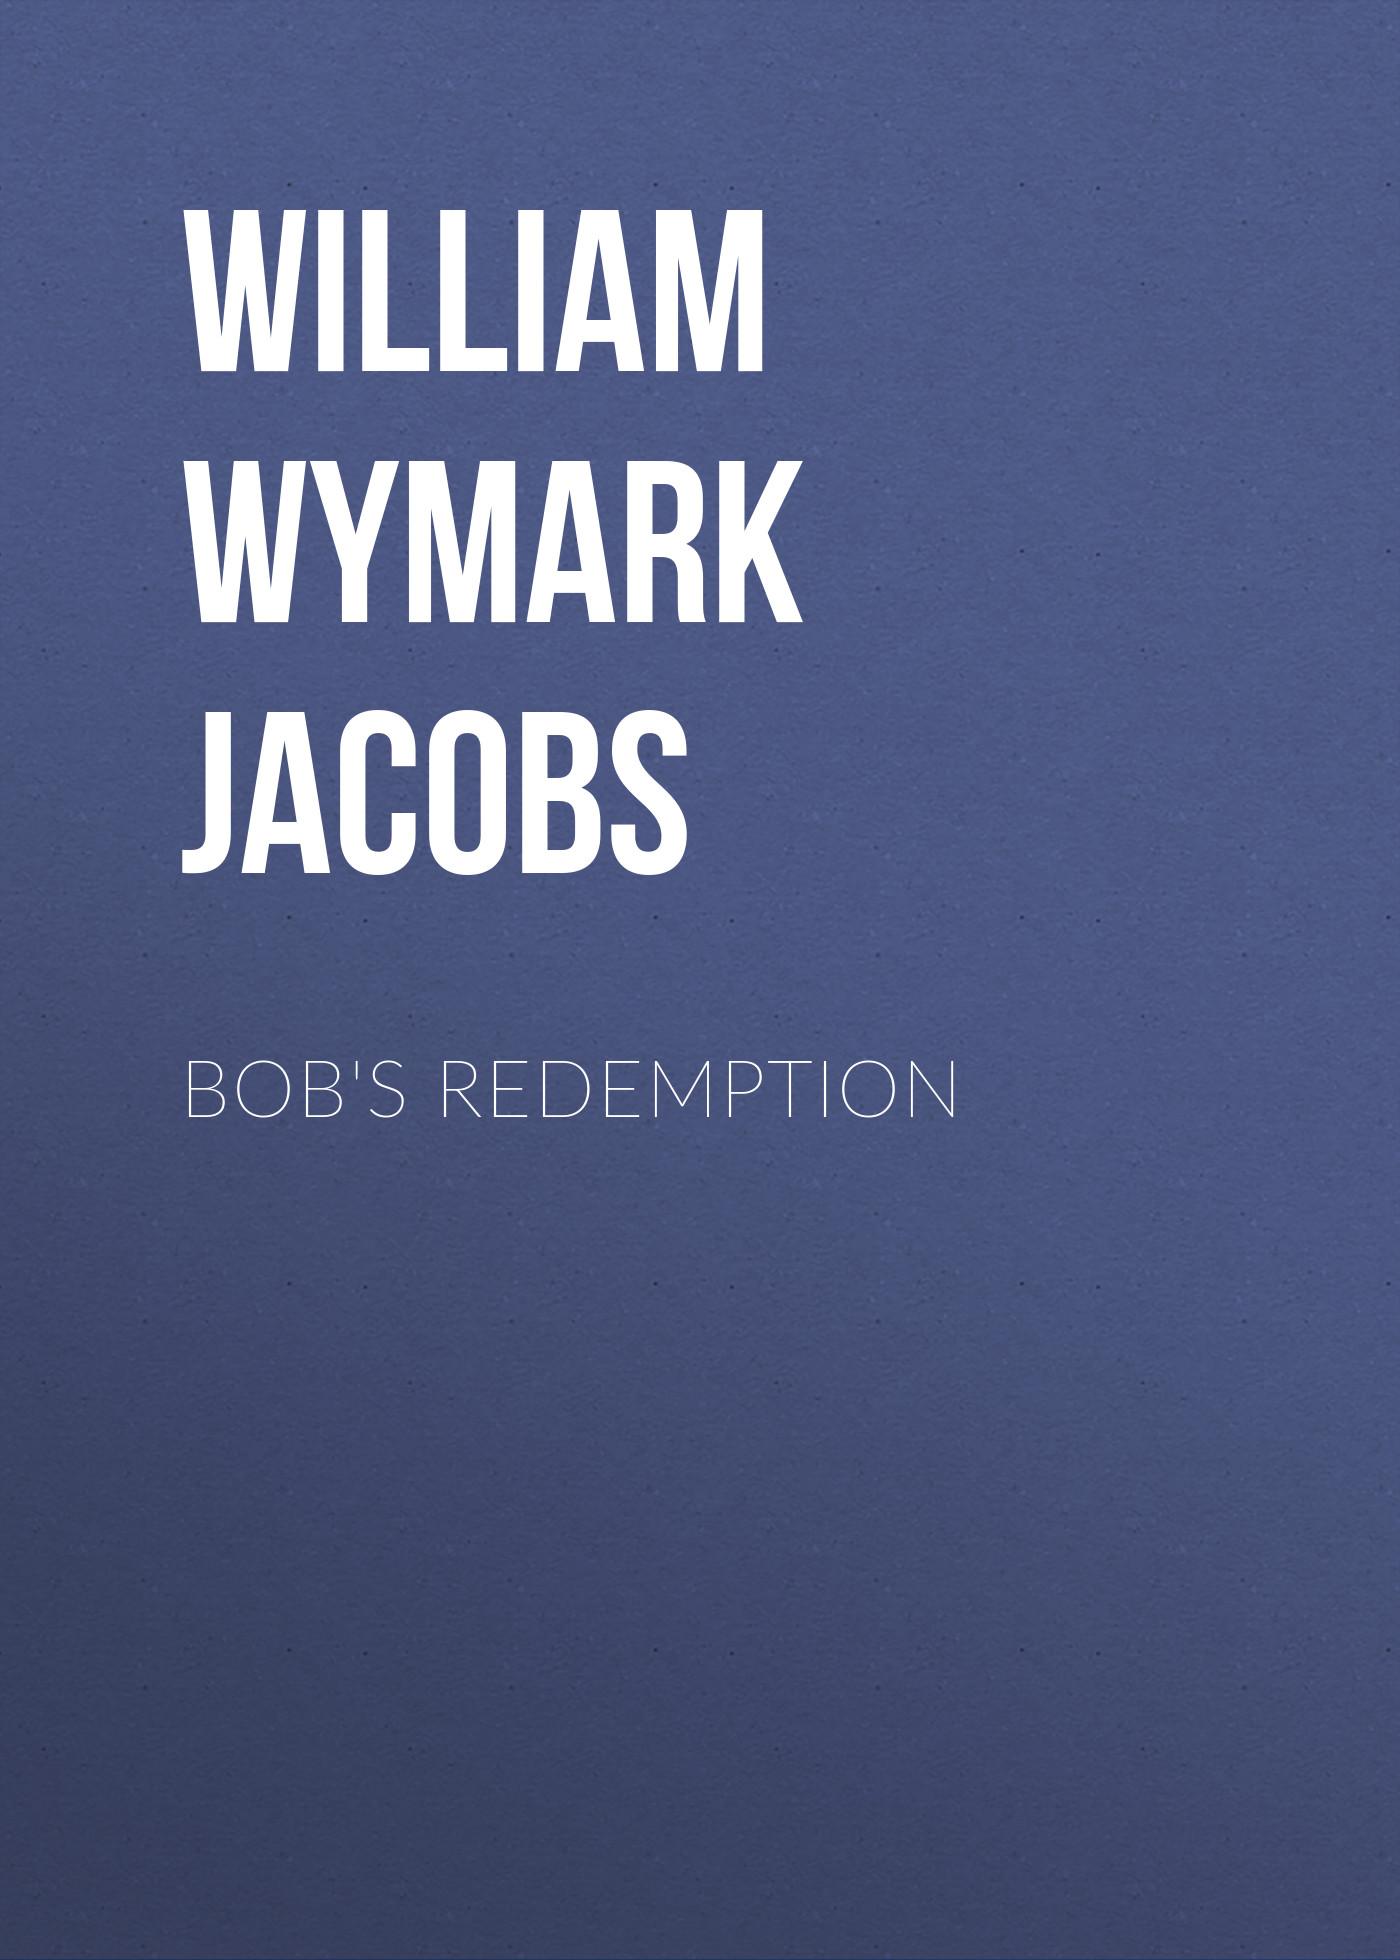 Книга Bob's Redemption из серии , созданная William Wymark Jacobs, может относится к жанру Зарубежный юмор, Зарубежная старинная литература, Зарубежная классика. Стоимость электронной книги Bob's Redemption с идентификатором 34844174 составляет 0 руб.